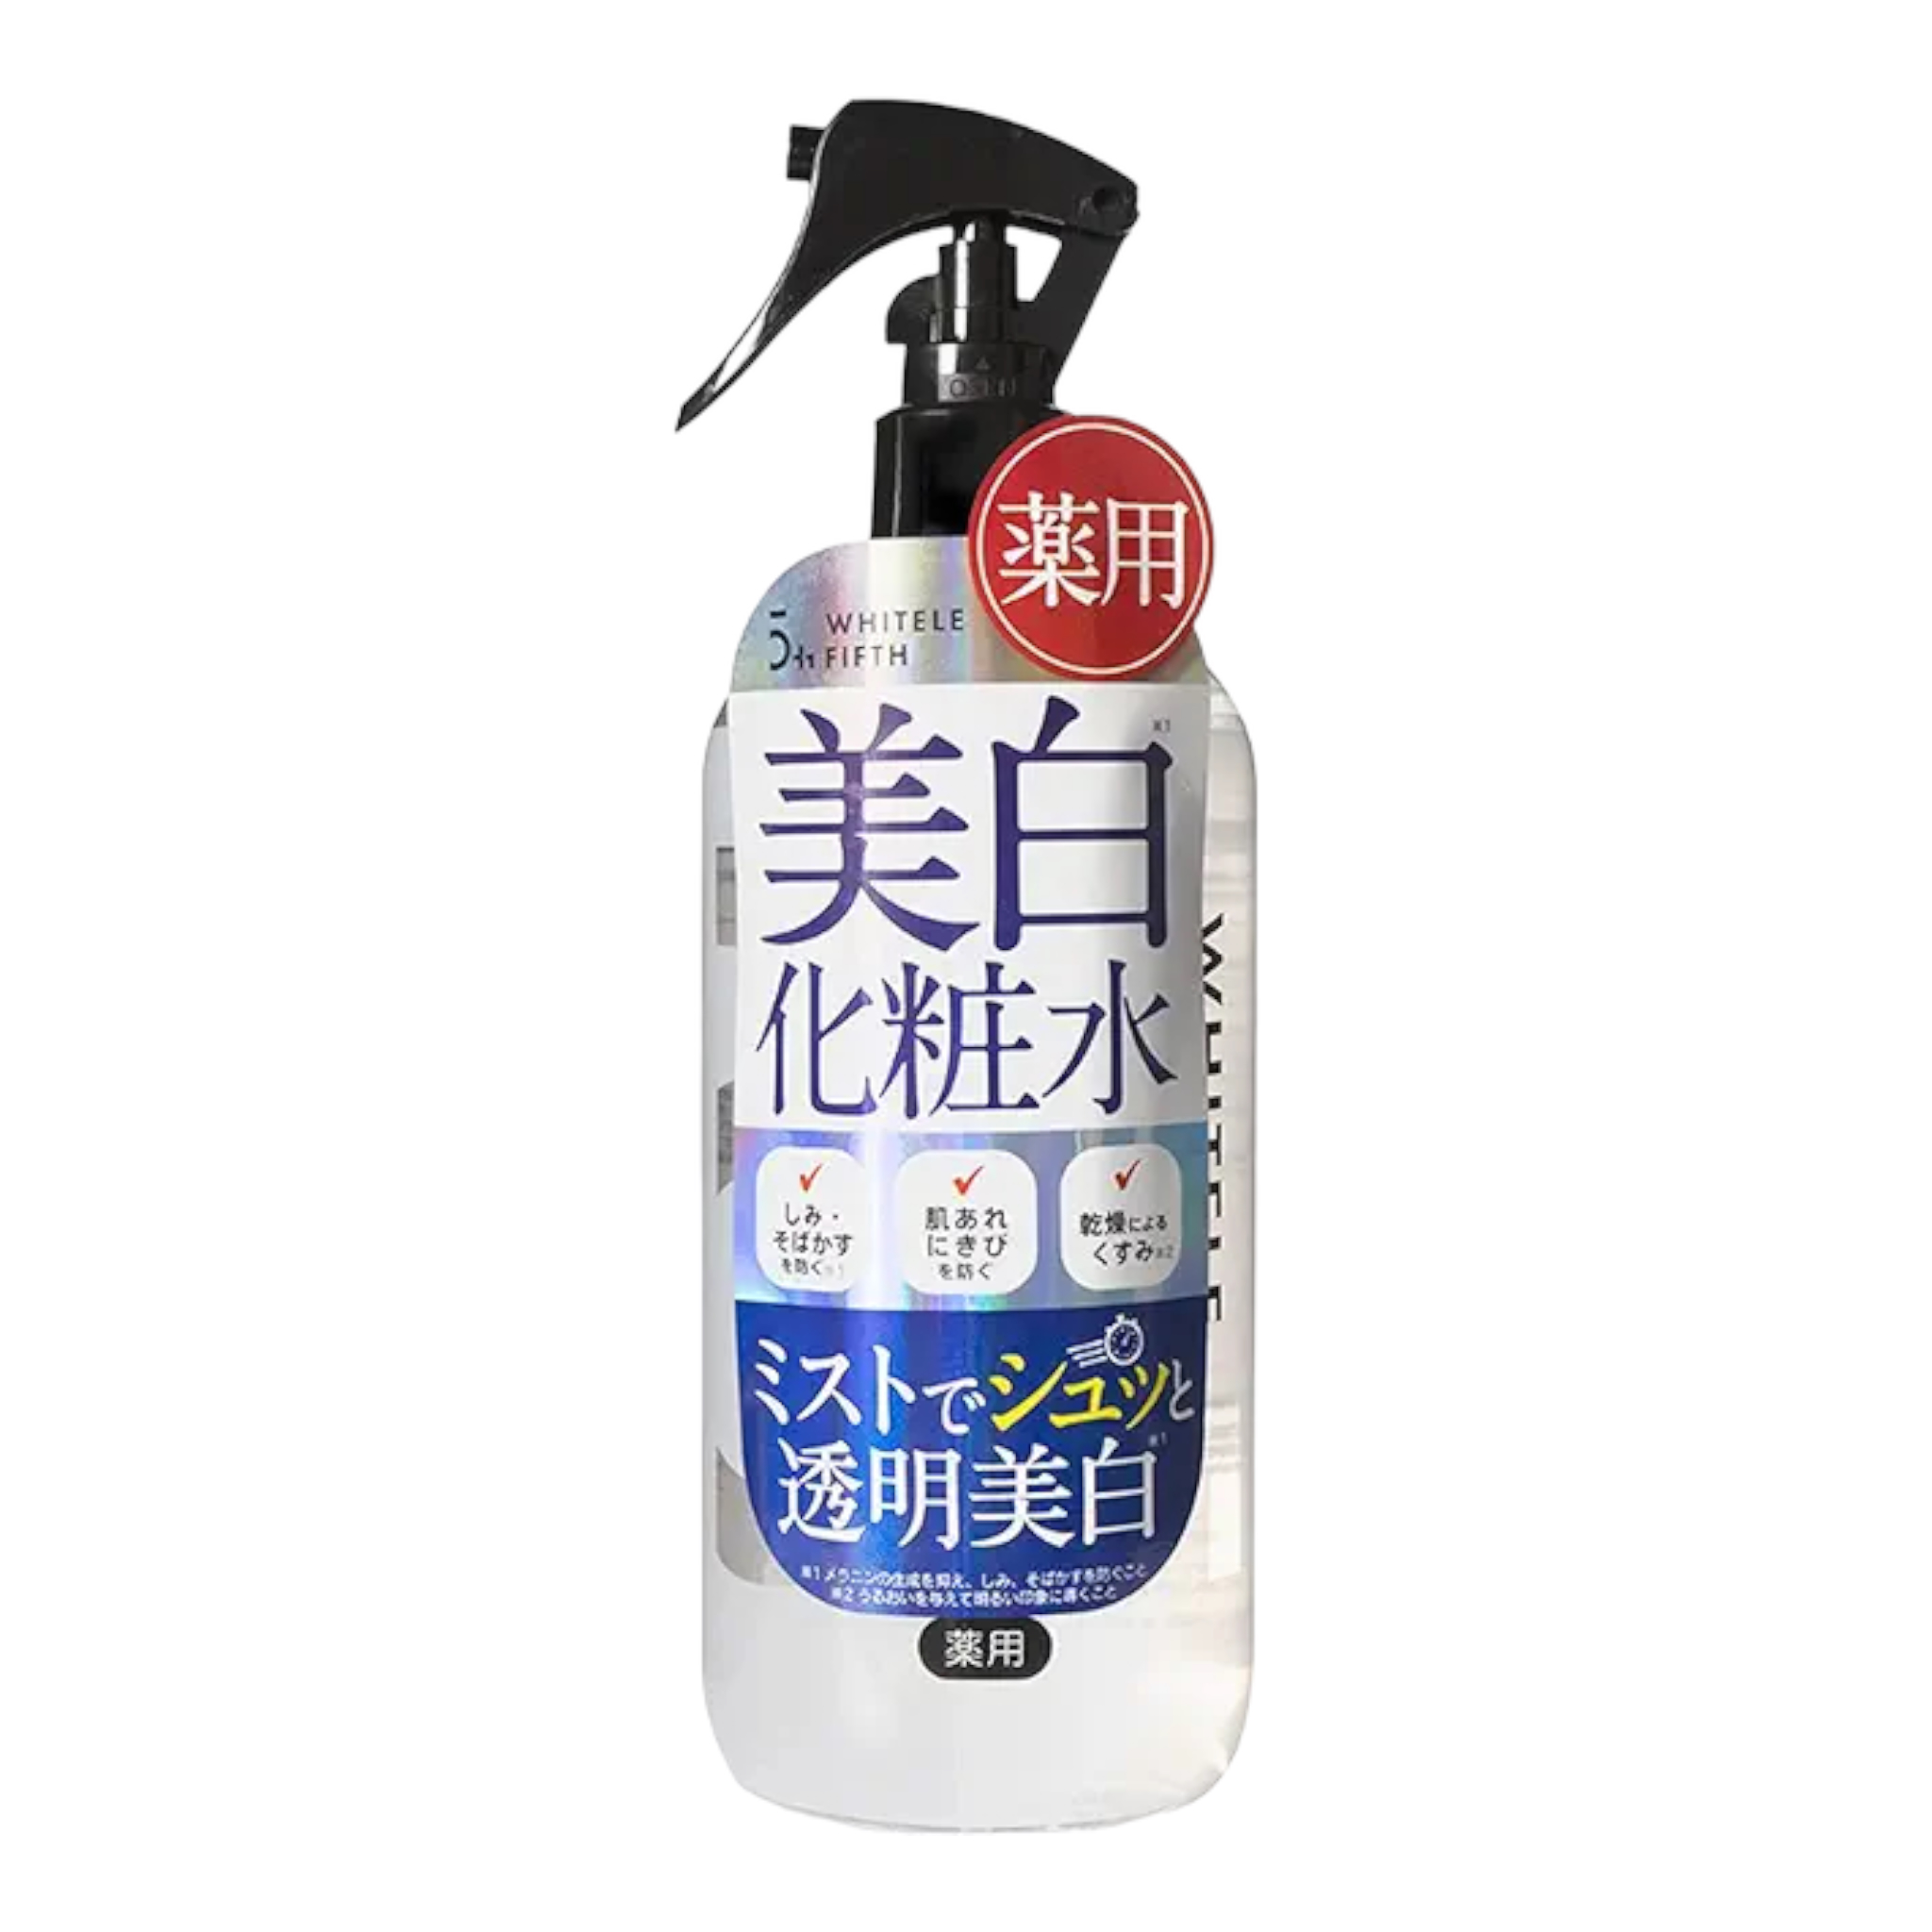 【医薬部外品】WHITELE FIFTH (ホワイトルフィフス)美白化粧水